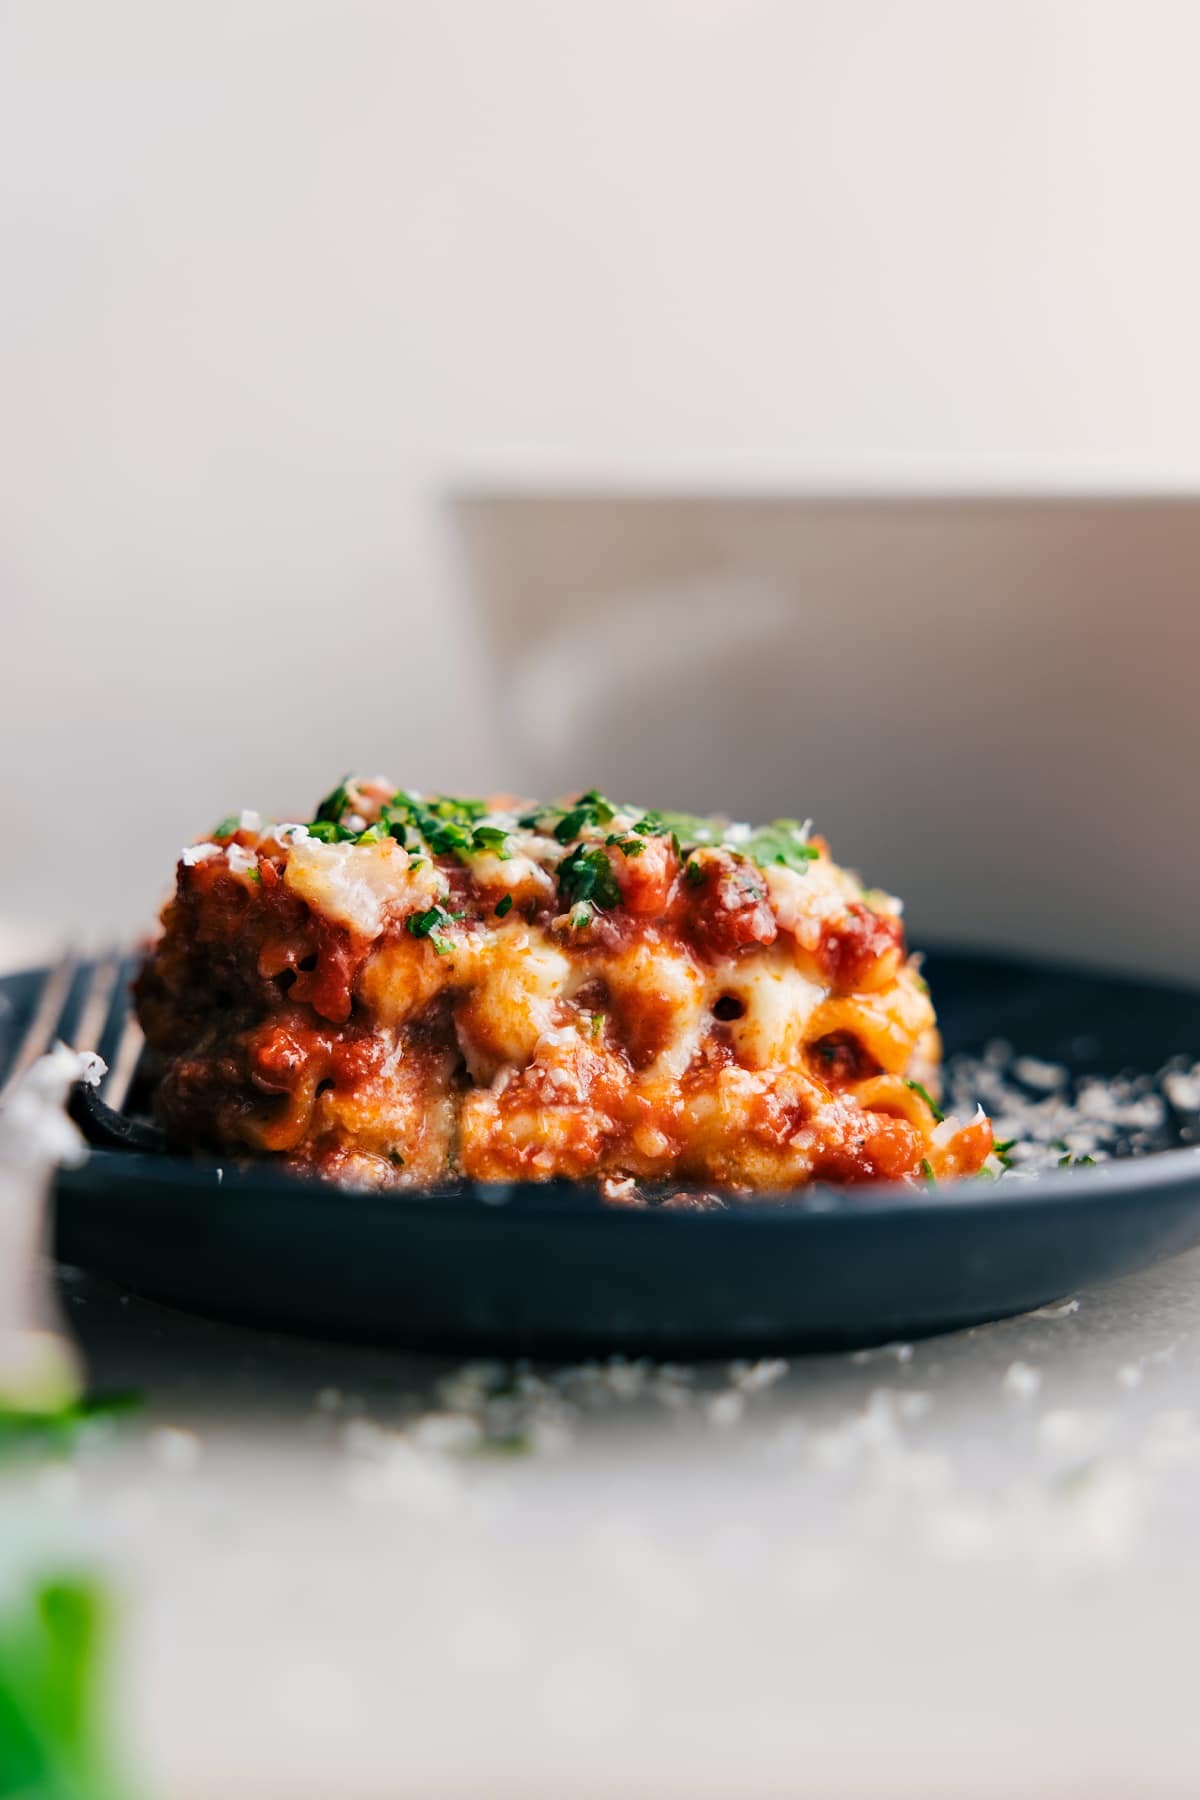 good eats: crock pot lasagna